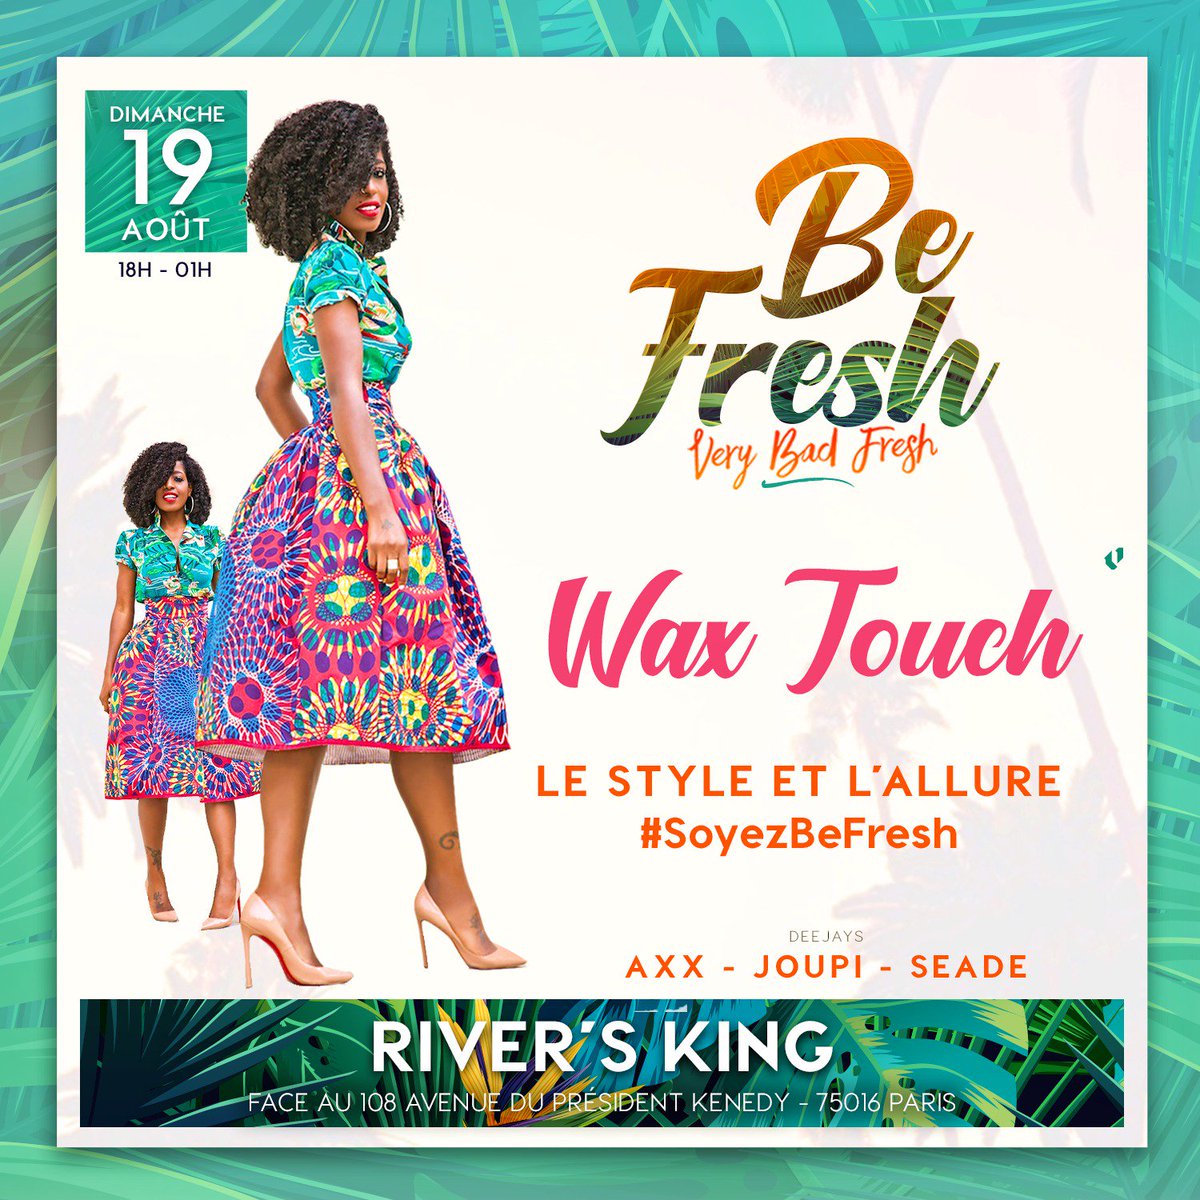 Dimanche  , Be Fresh edition Very Bad Fresh......#ShowMeYourStyle😎🤗
💄💃🏾Le Style & l'allure que ce soit en Color Jean , Flower Power , Wax Touch ou autres Styles💃🏾 #INSPIRATION...On Termine les vacances d'été avec du Style, de la légèreté et de la Couleur 😇